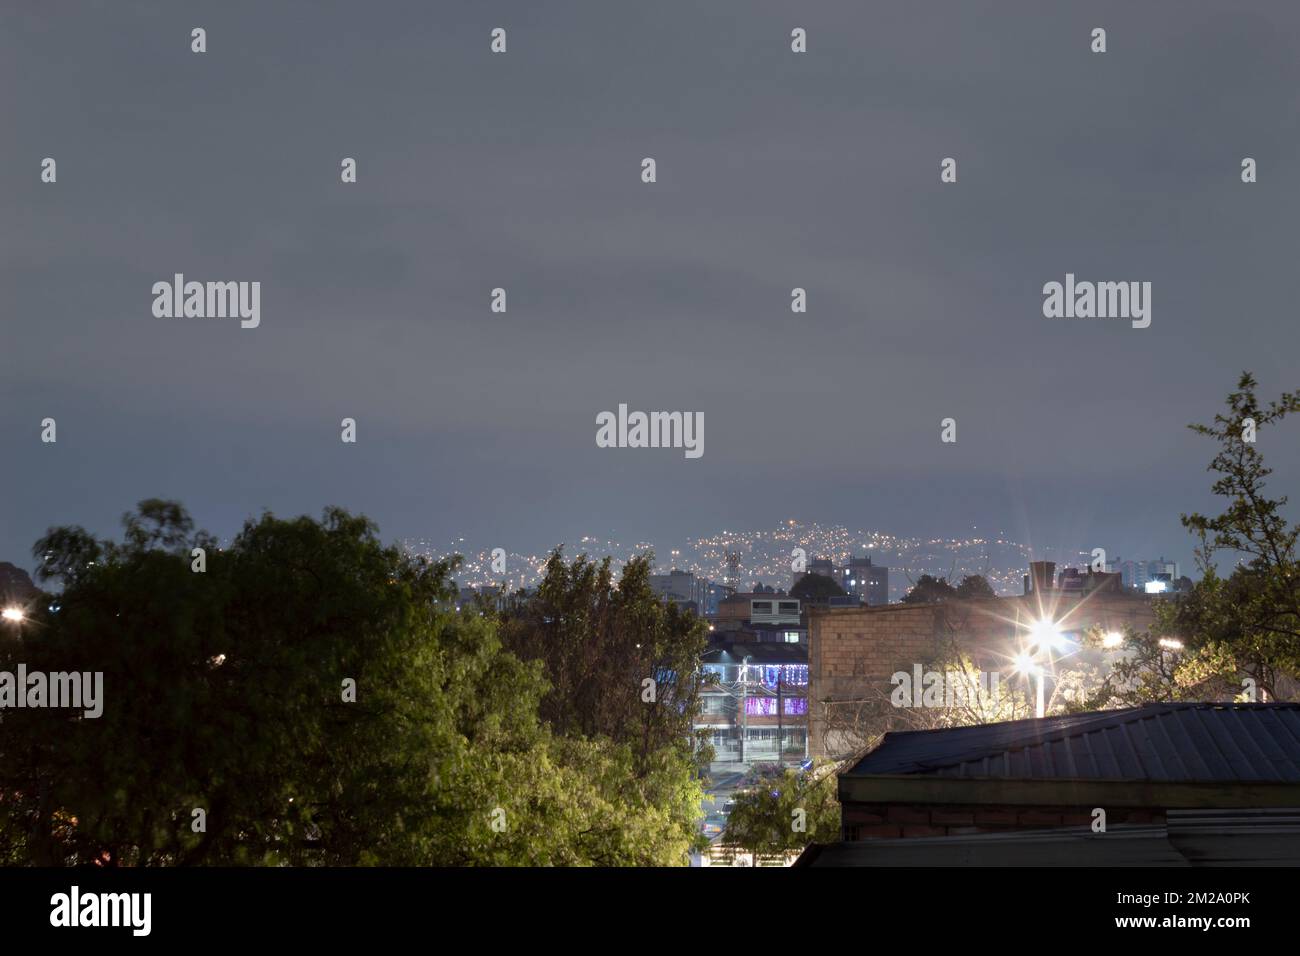 Une vue typique depuis le toit à l'extérieur des banlieues quartier lumières de nuit dans la ville d'amérique latine avec ciel gris nuageux Banque D'Images